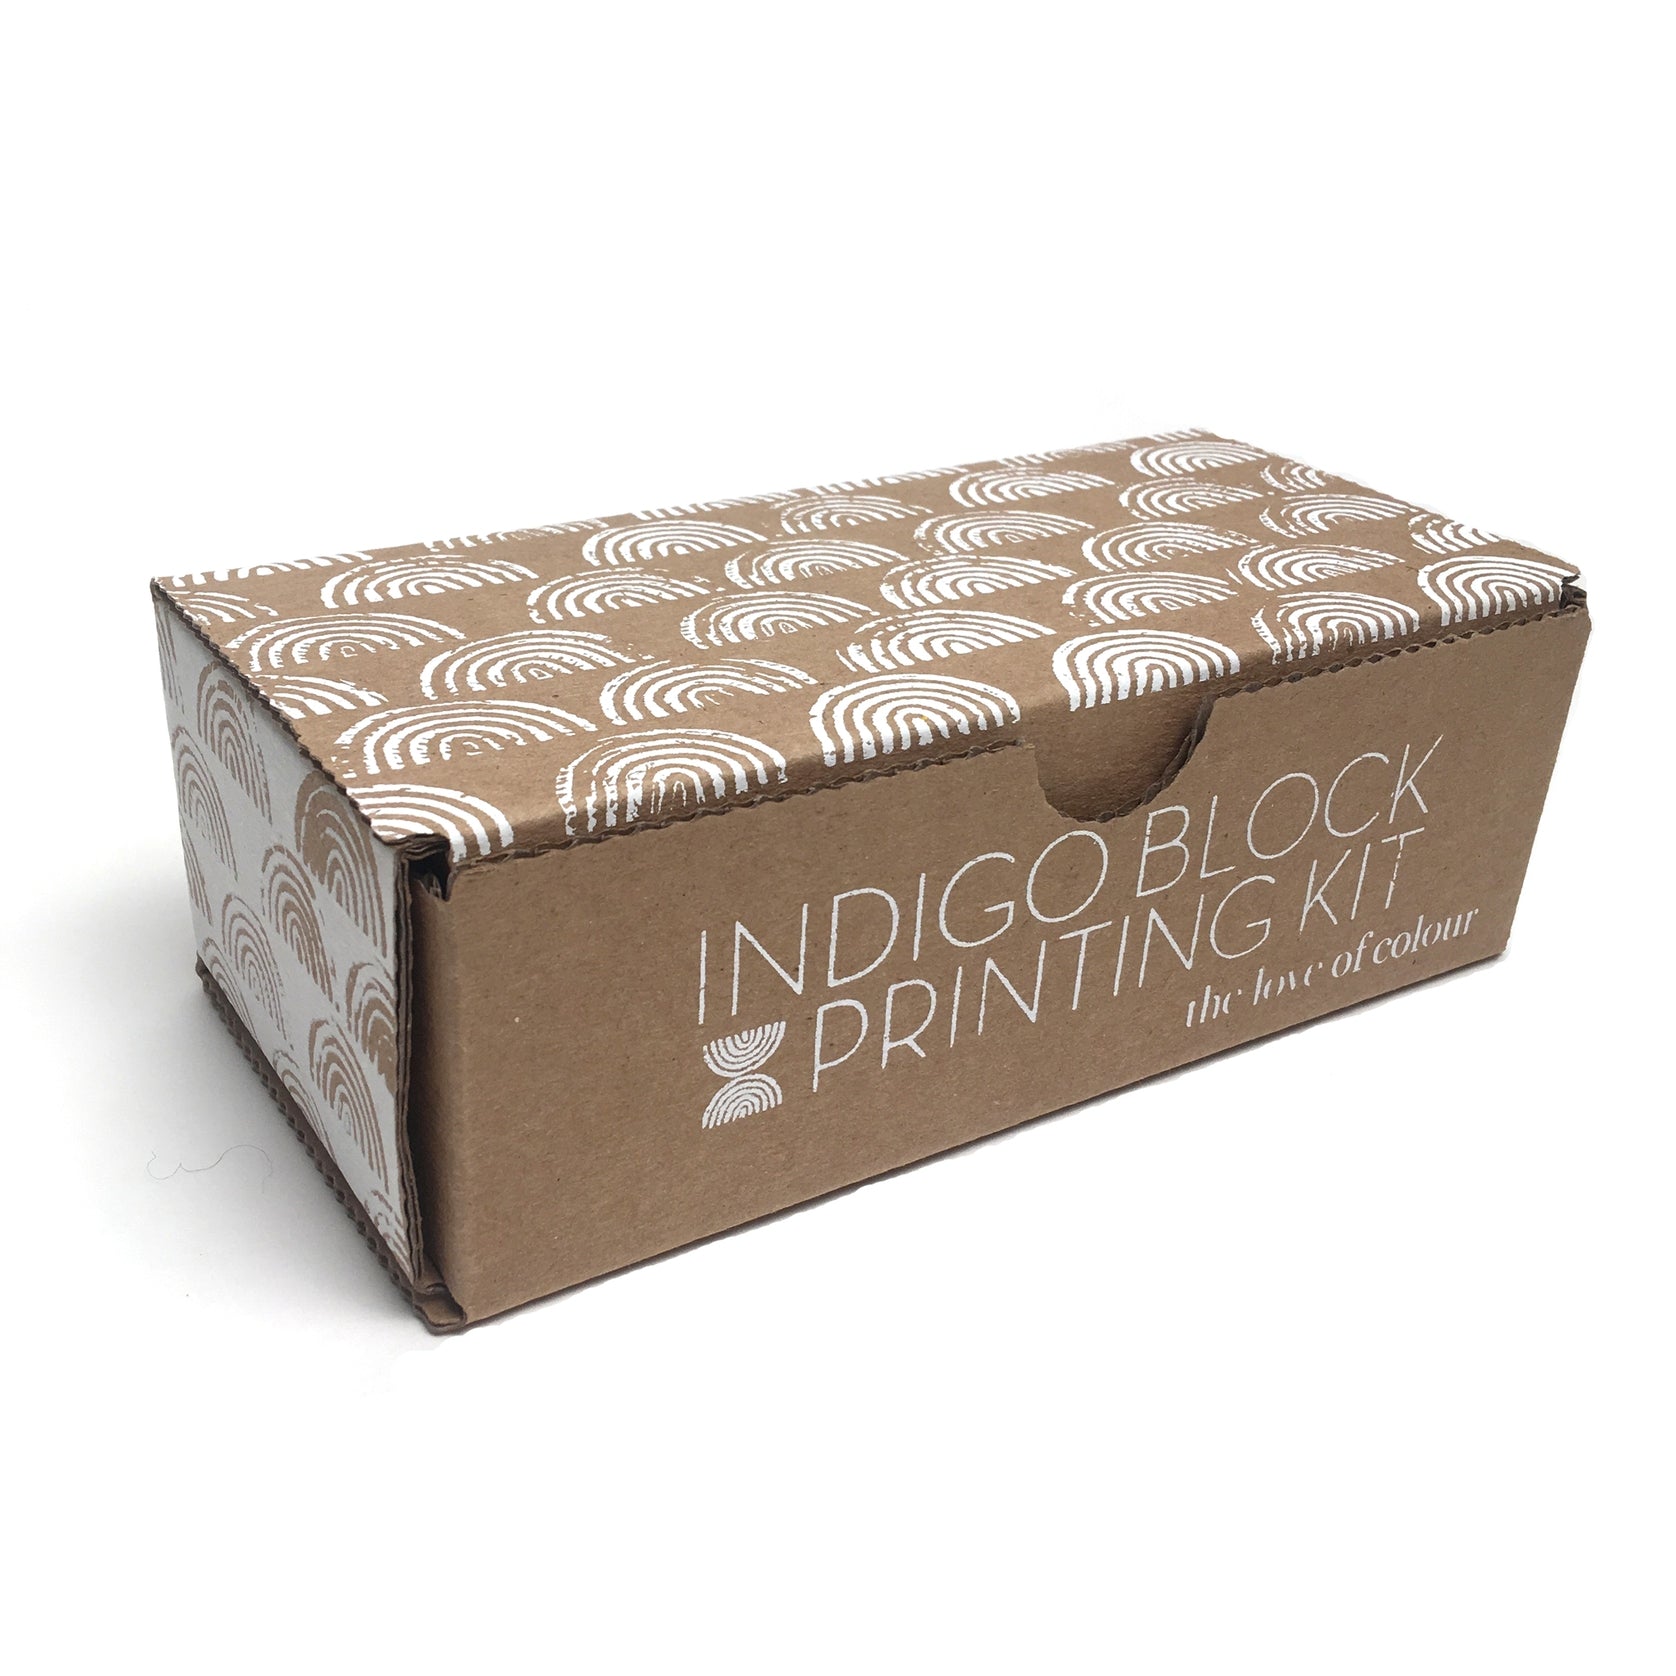 TLOC - Indigo Block Printing Kit